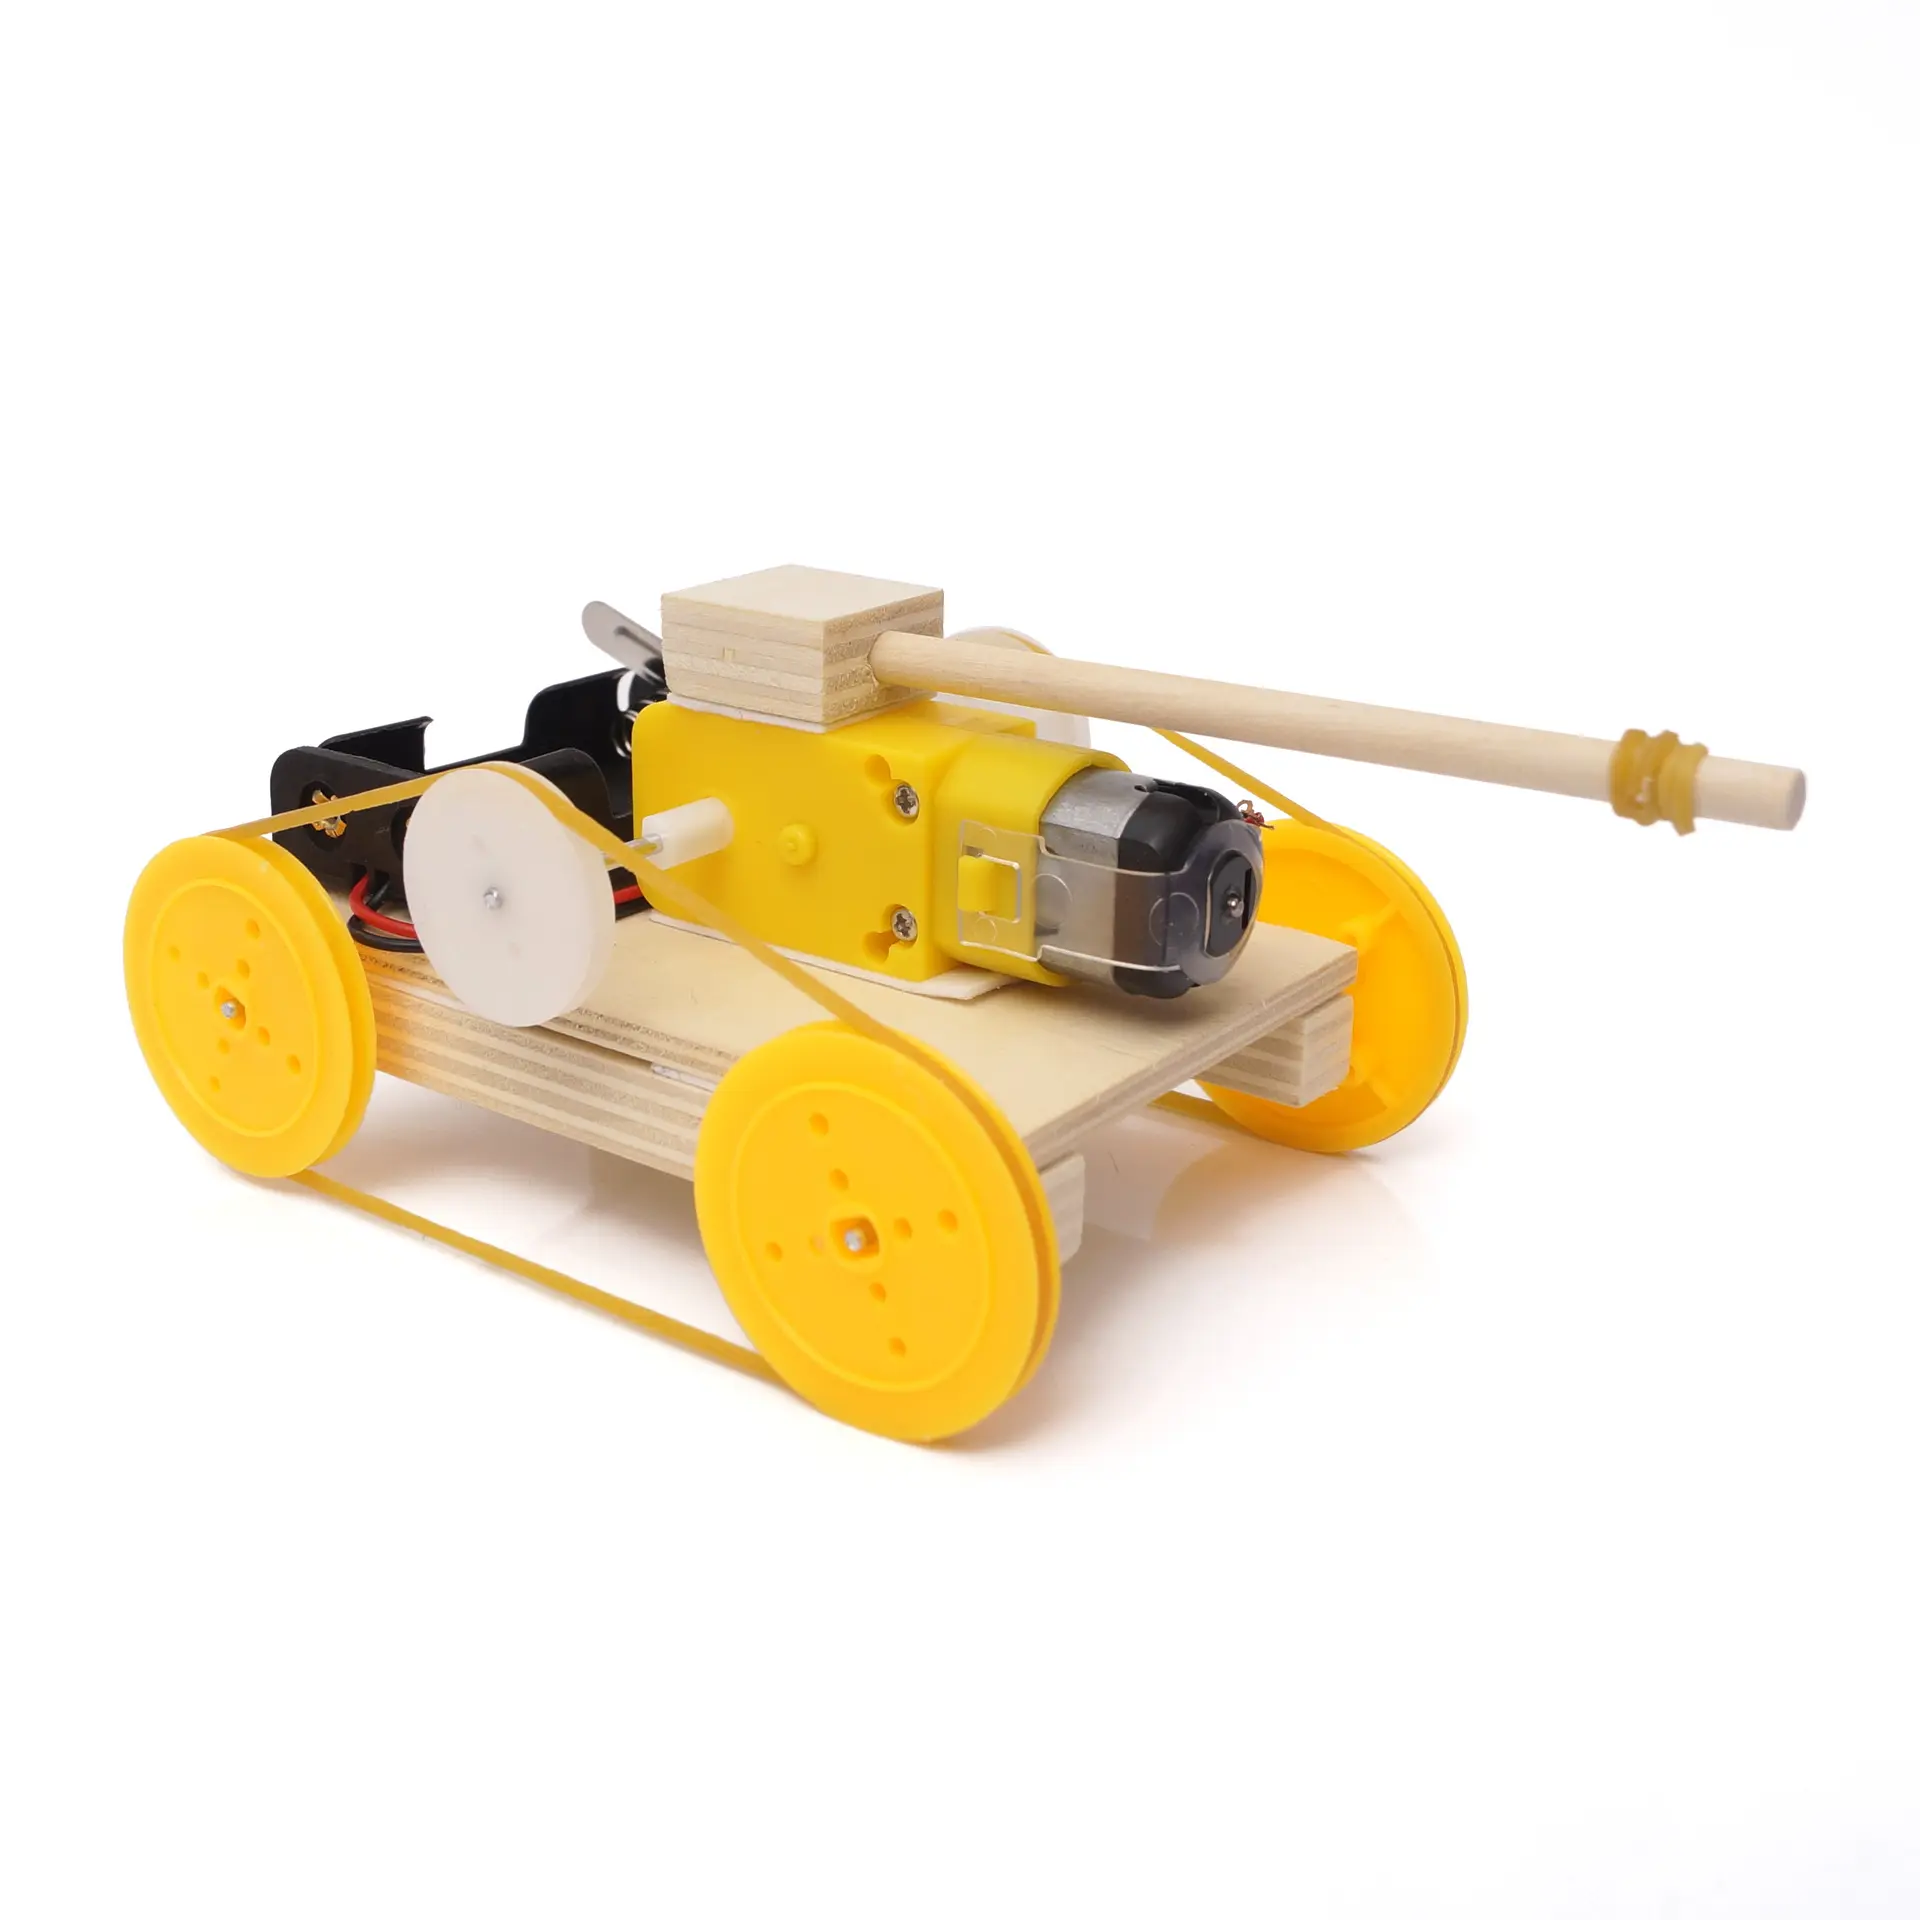 Esperimento scientifico per bambini giocattolo della scuola primaria per bambini fai da te modello di serbatoio elettrico in legno Kit di apprendimento della fisica